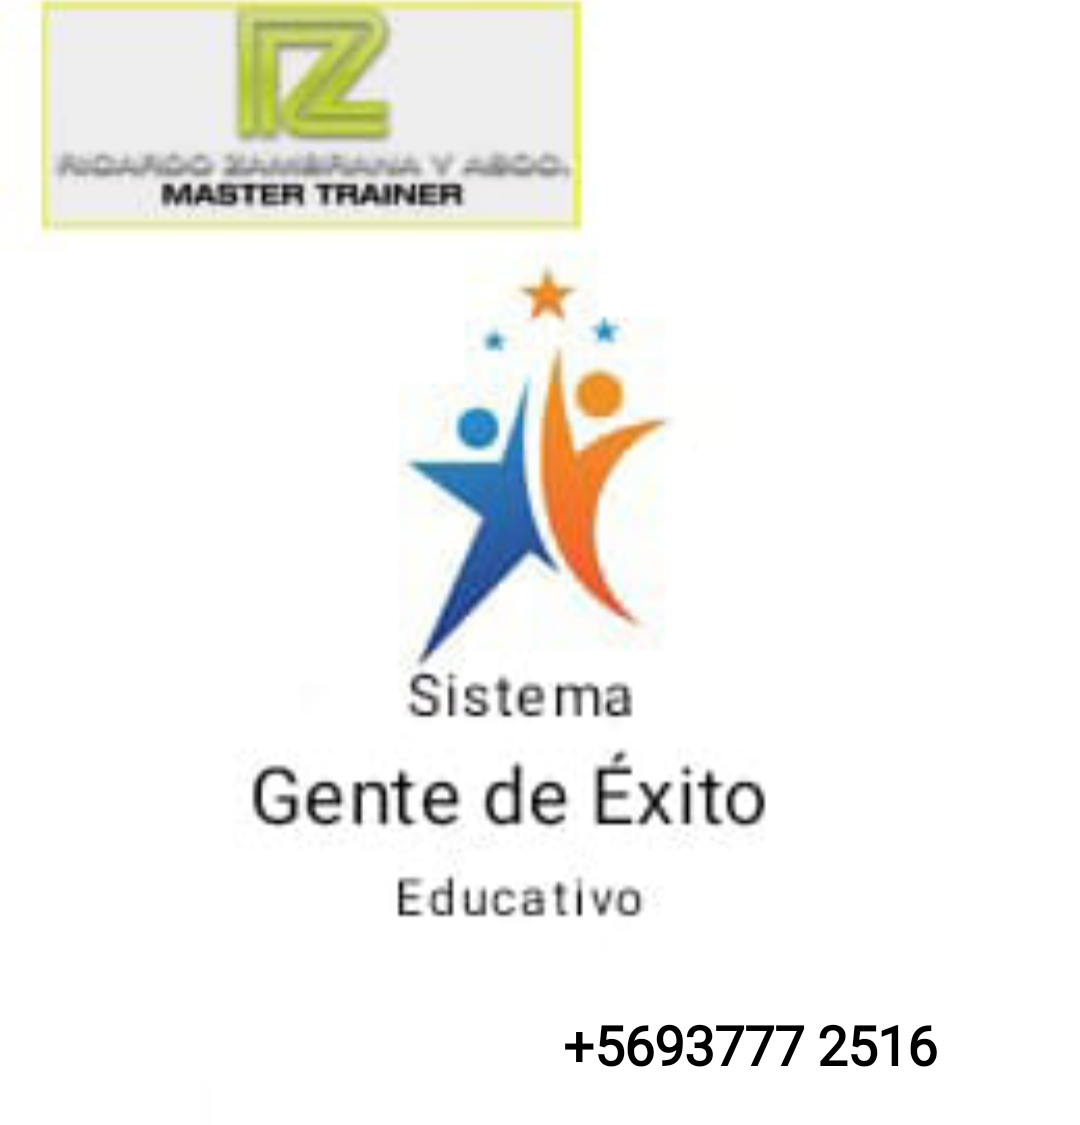 Sistema

Gente de Exito

Educativo

+5693777 2516